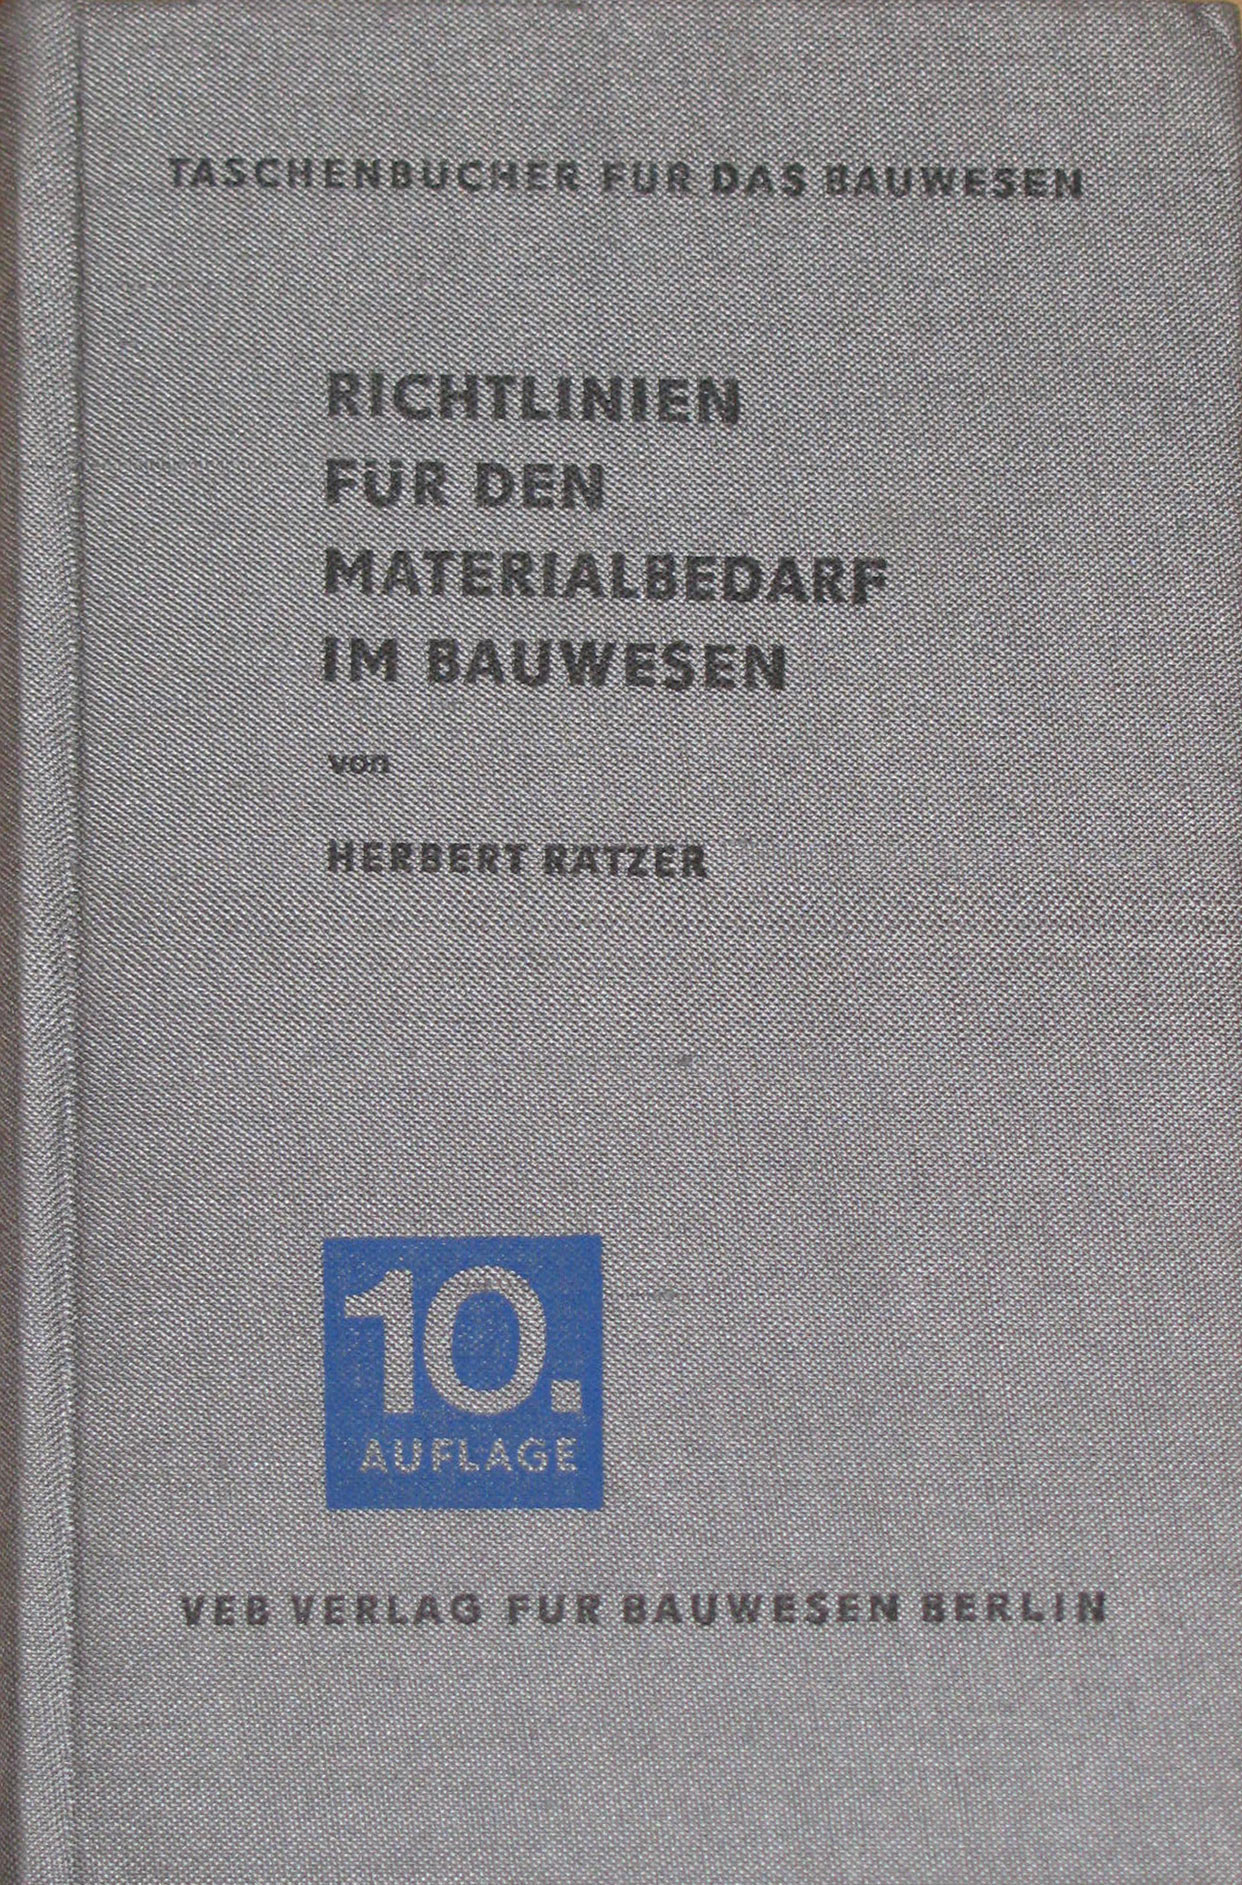 Rätzer, Herbert:  Richtlinien für den Materialbedarf im Bauwesen 